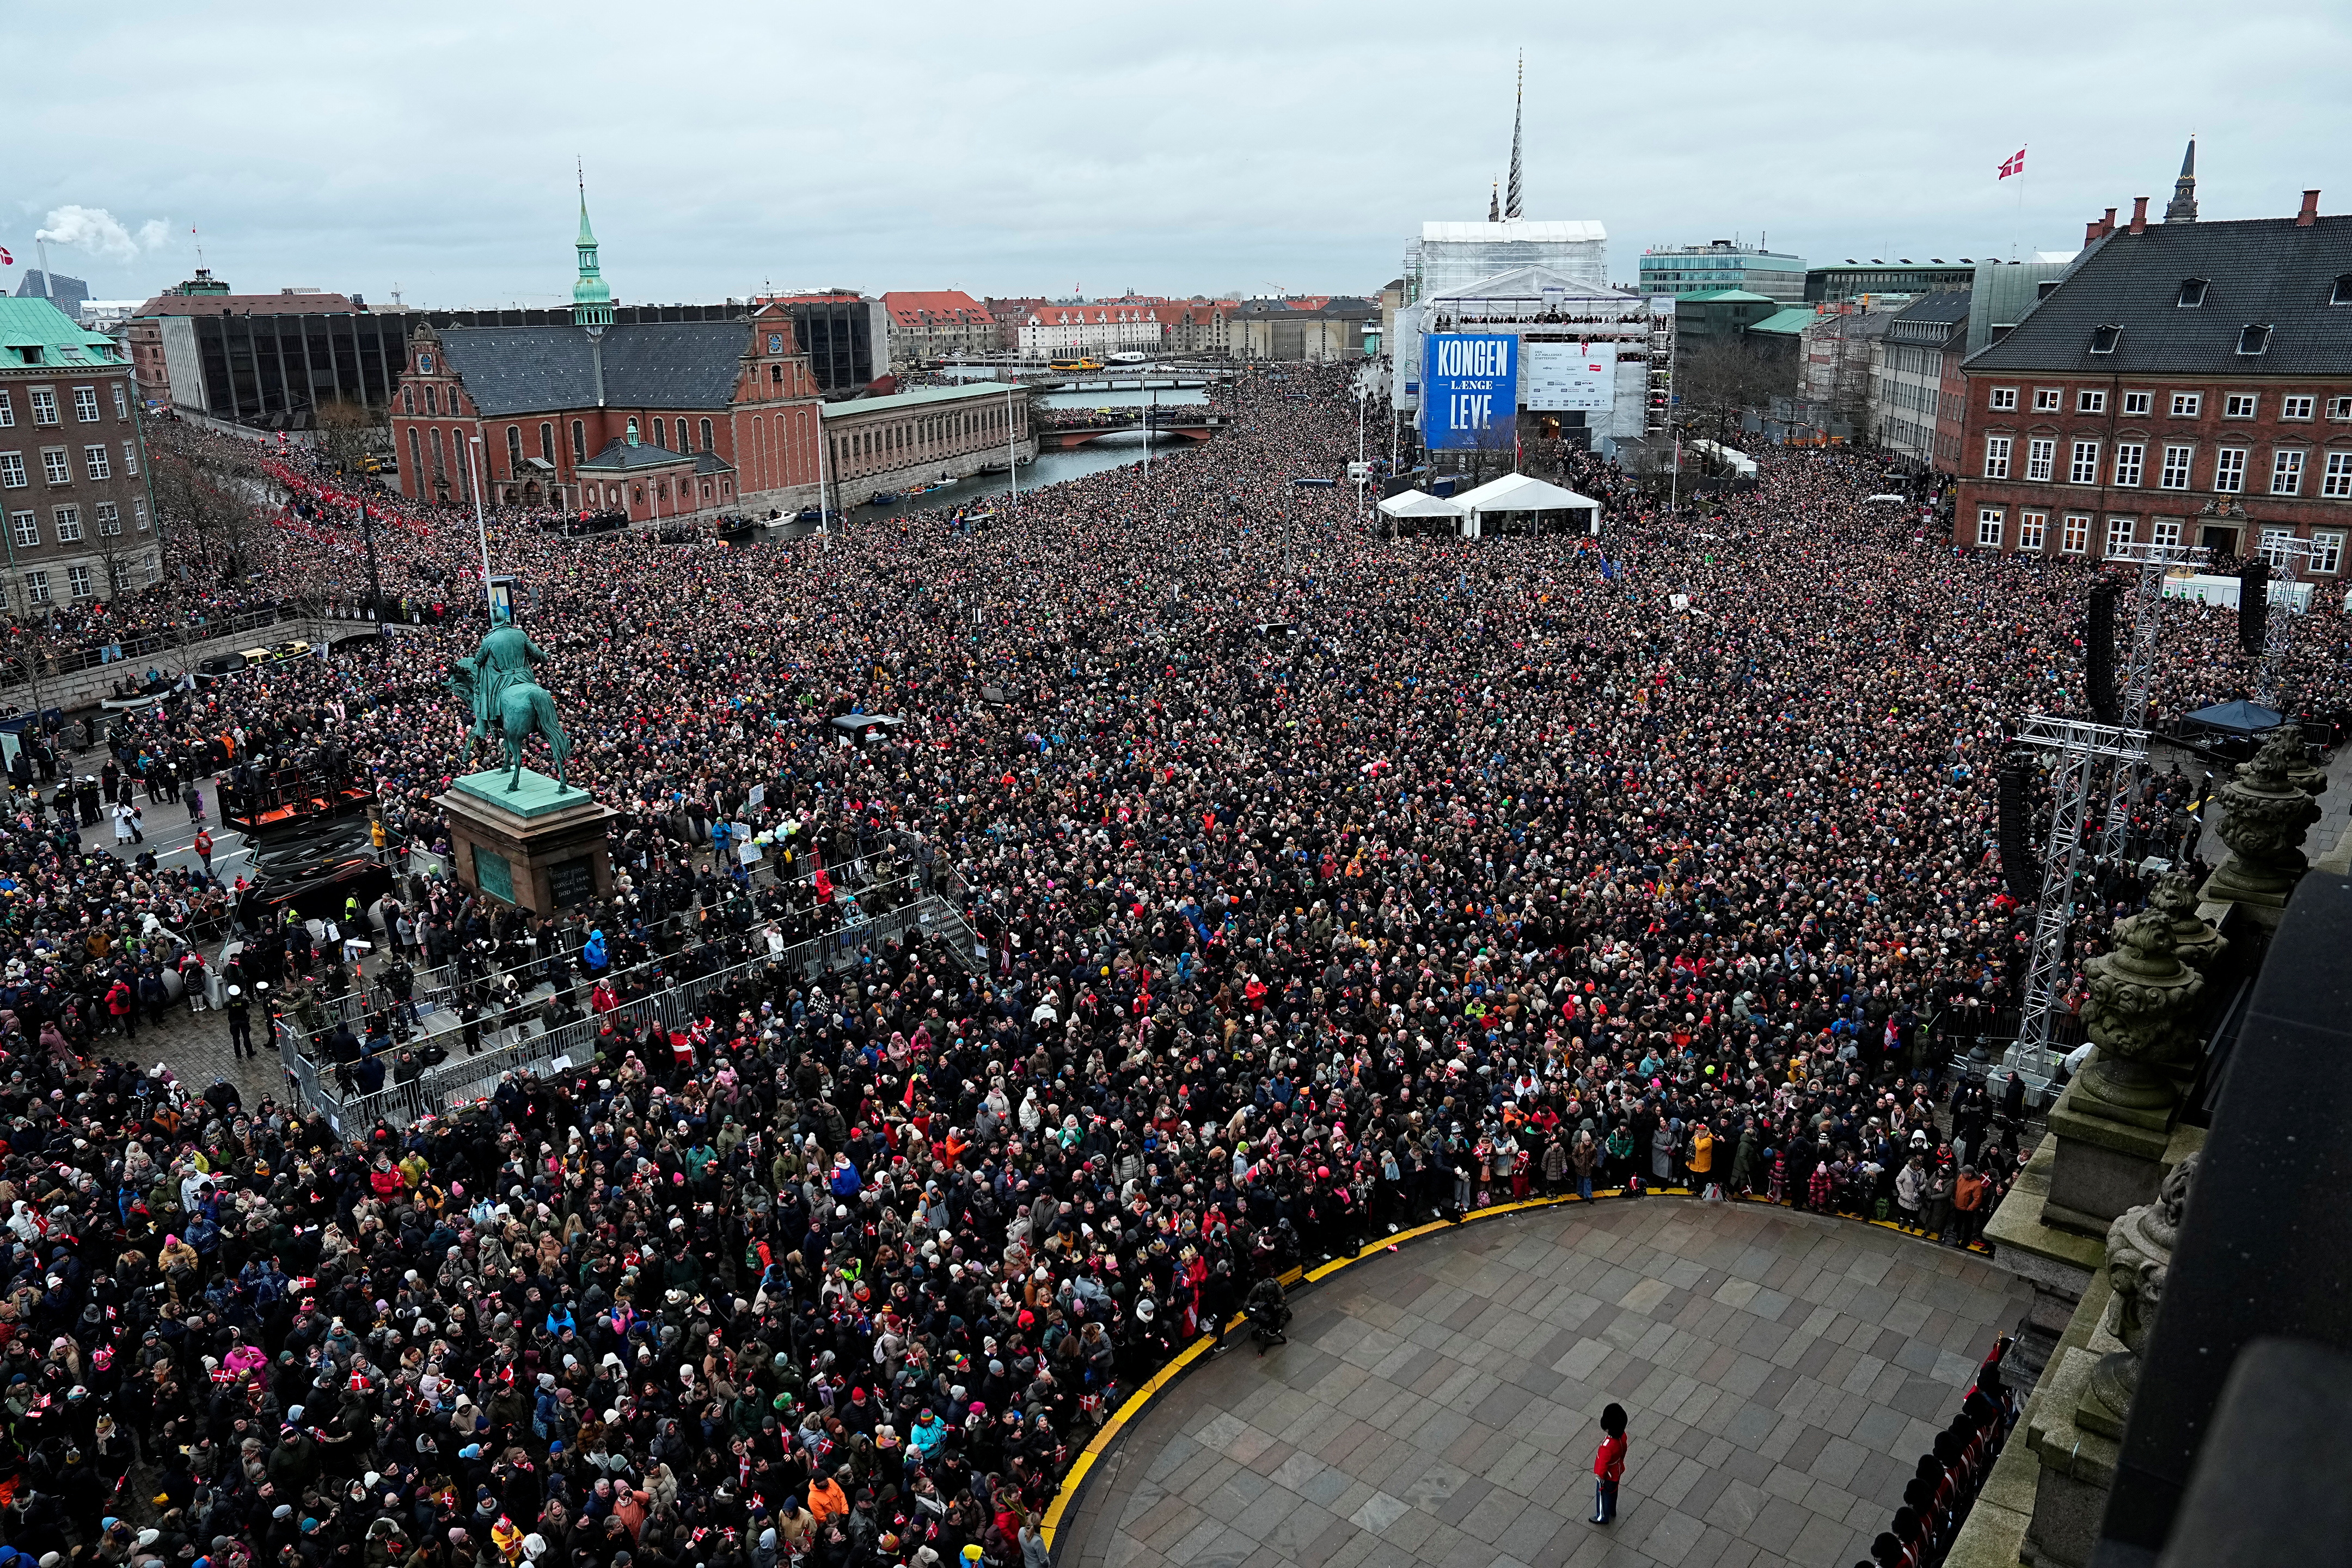 Des foules immenses se sont rassemblées pour apercevoir leur nouveau monarque sur le balcon du palais de Christiansborg